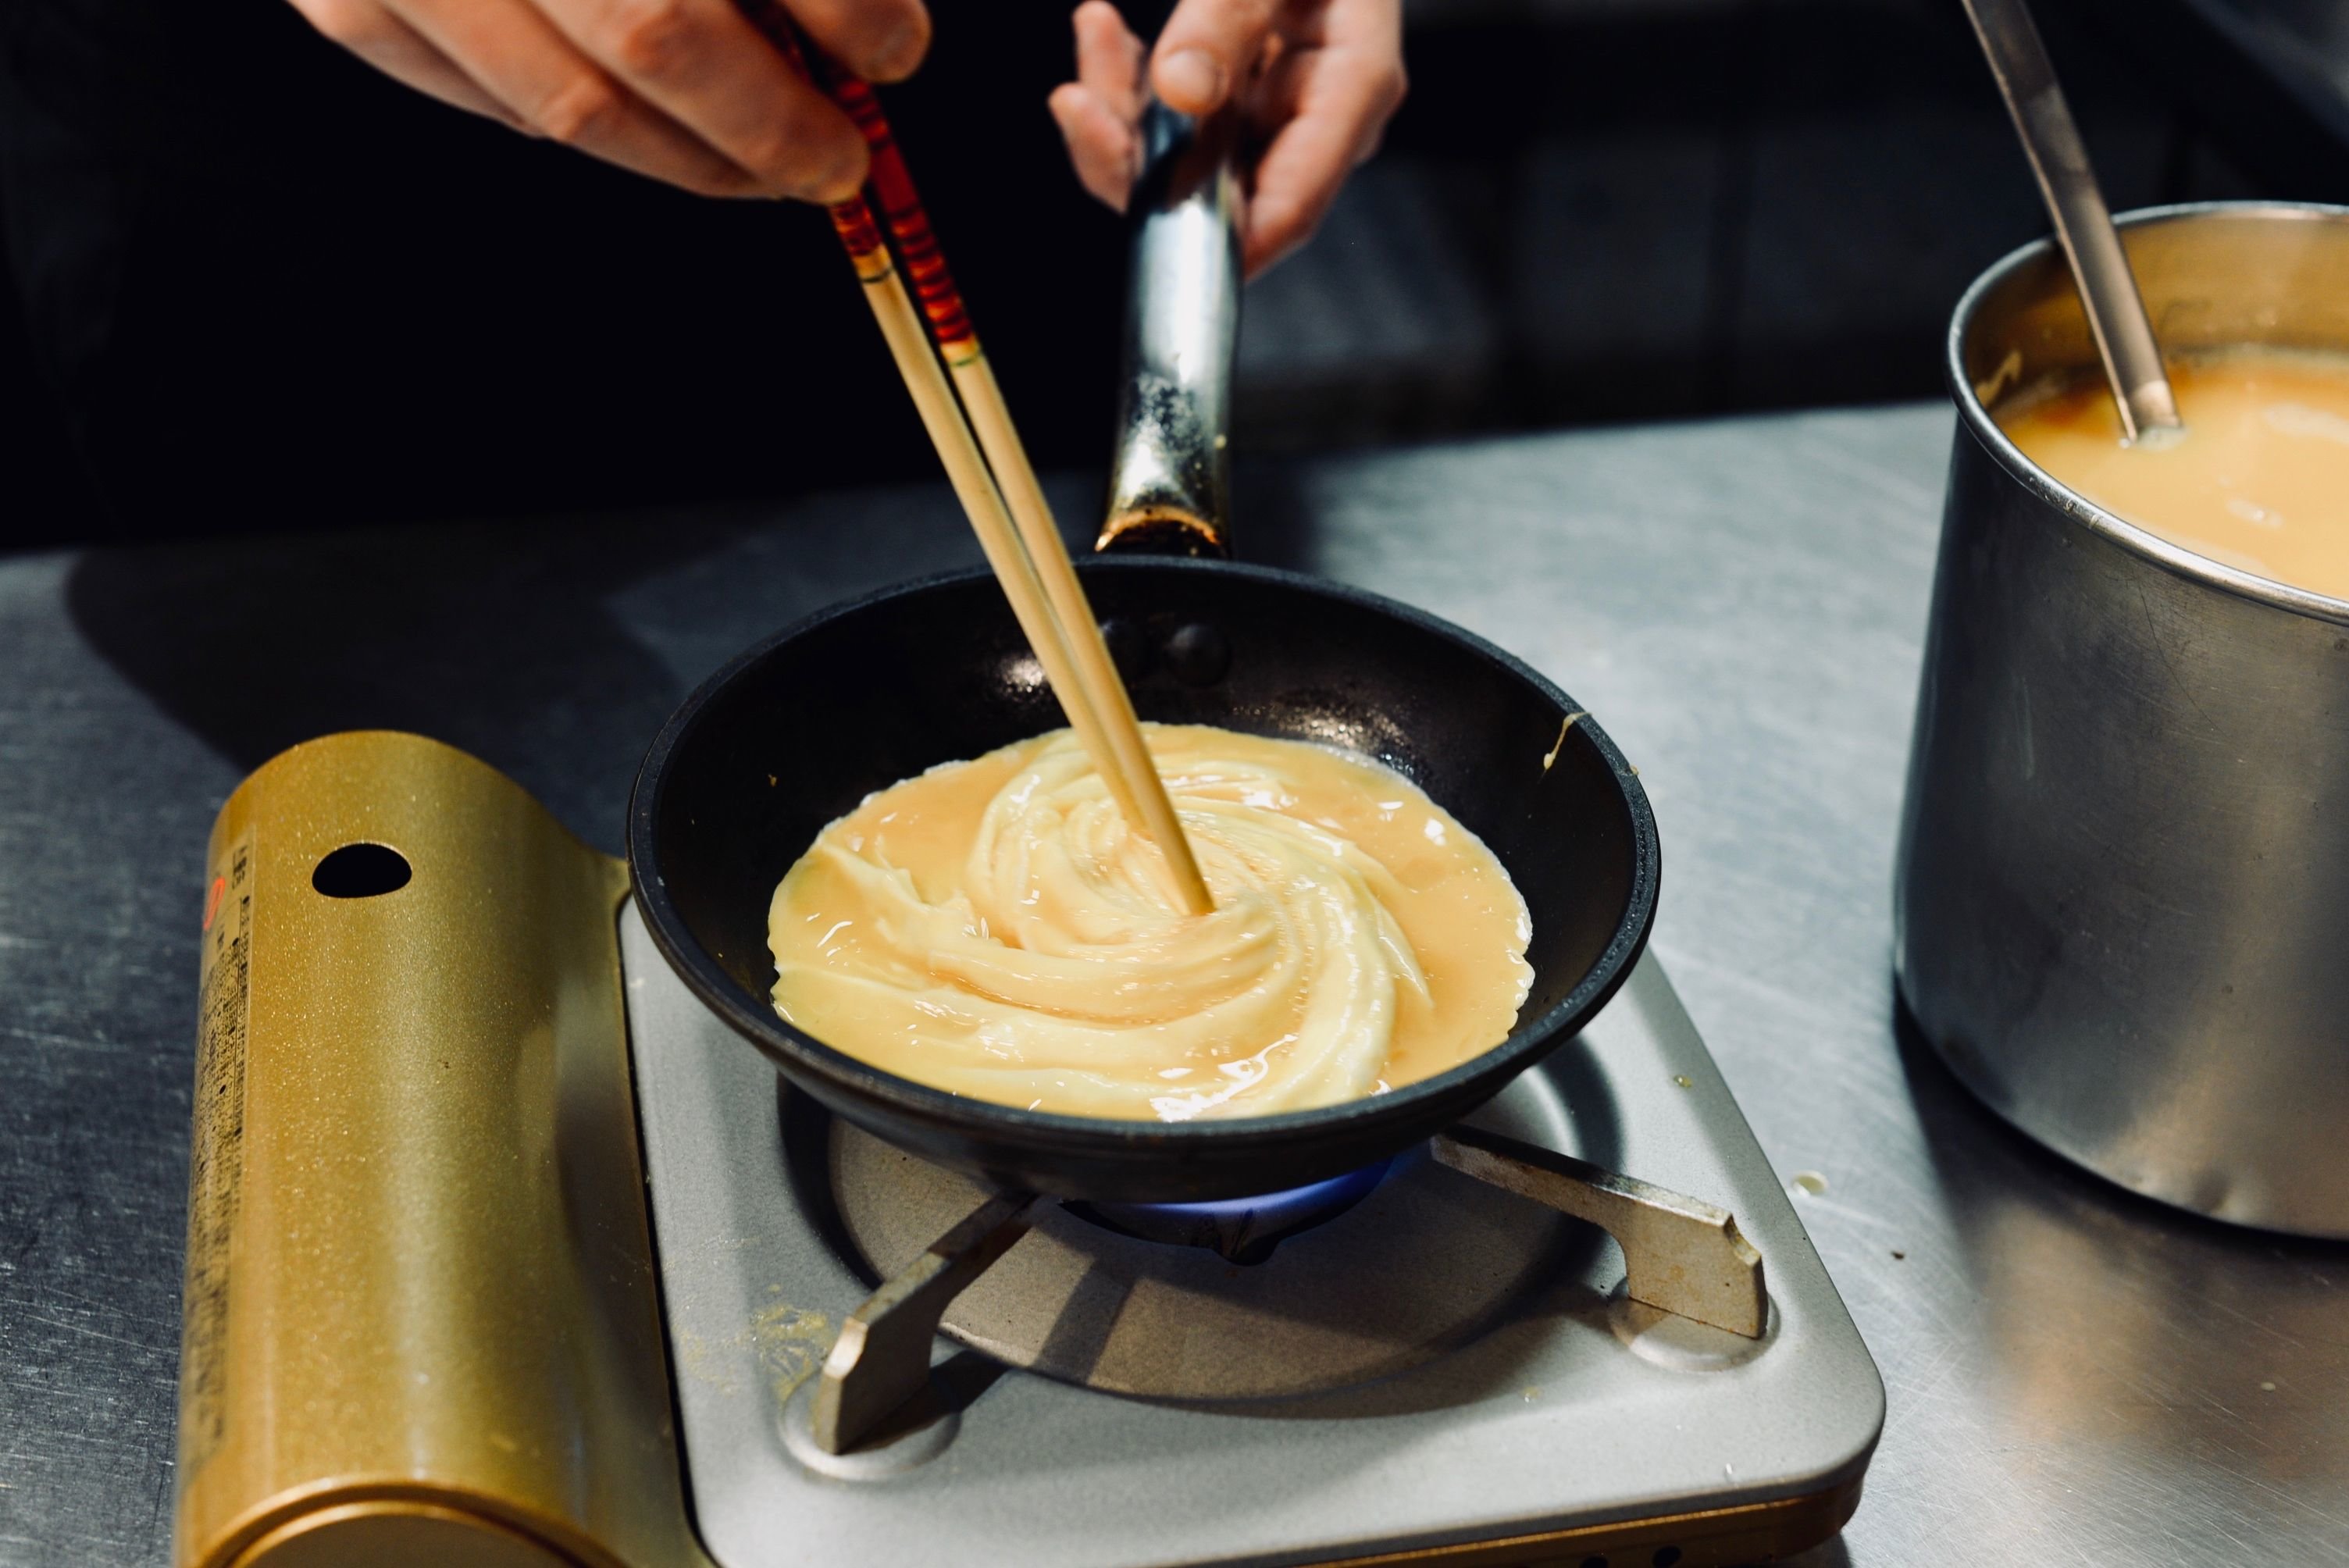 L'omurice, vous connaissez ? Cette omelette japonaise roulée au riz se fait une place dans nos assiettes. LP/Joffrey Vovos